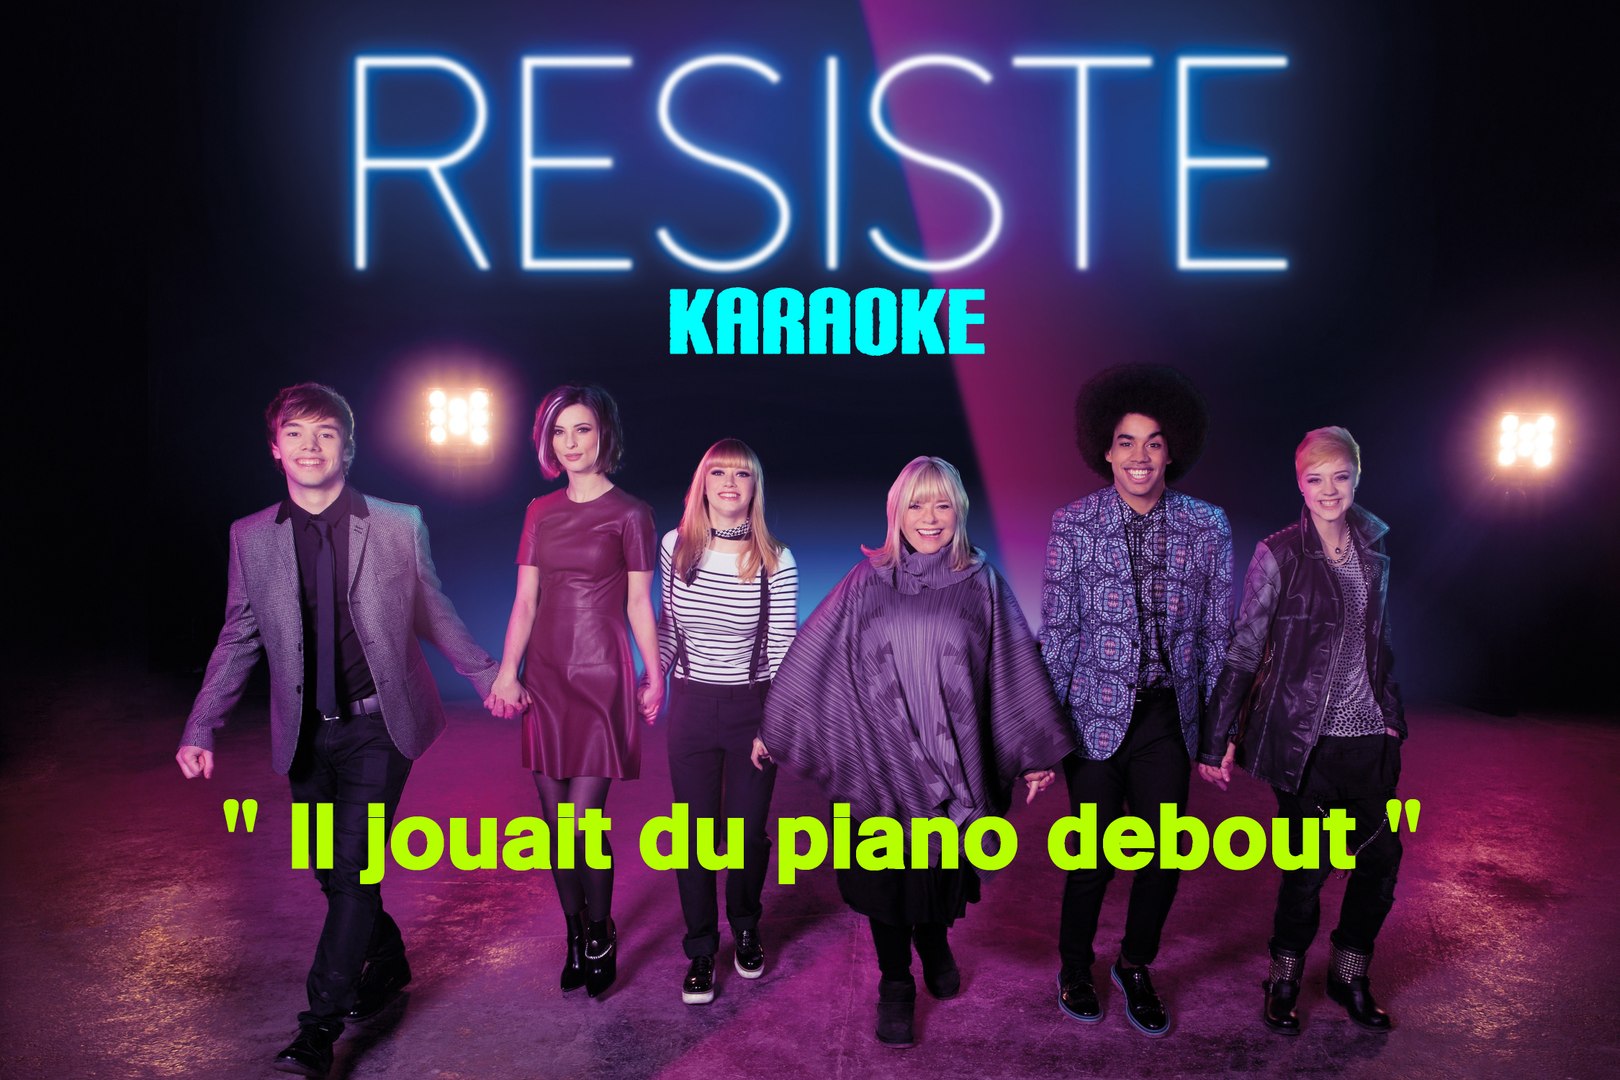 KARAOKE LA COMEDIE MUSICALE RESISTE - Il jouait du piano debout - Vidéo  Dailymotion